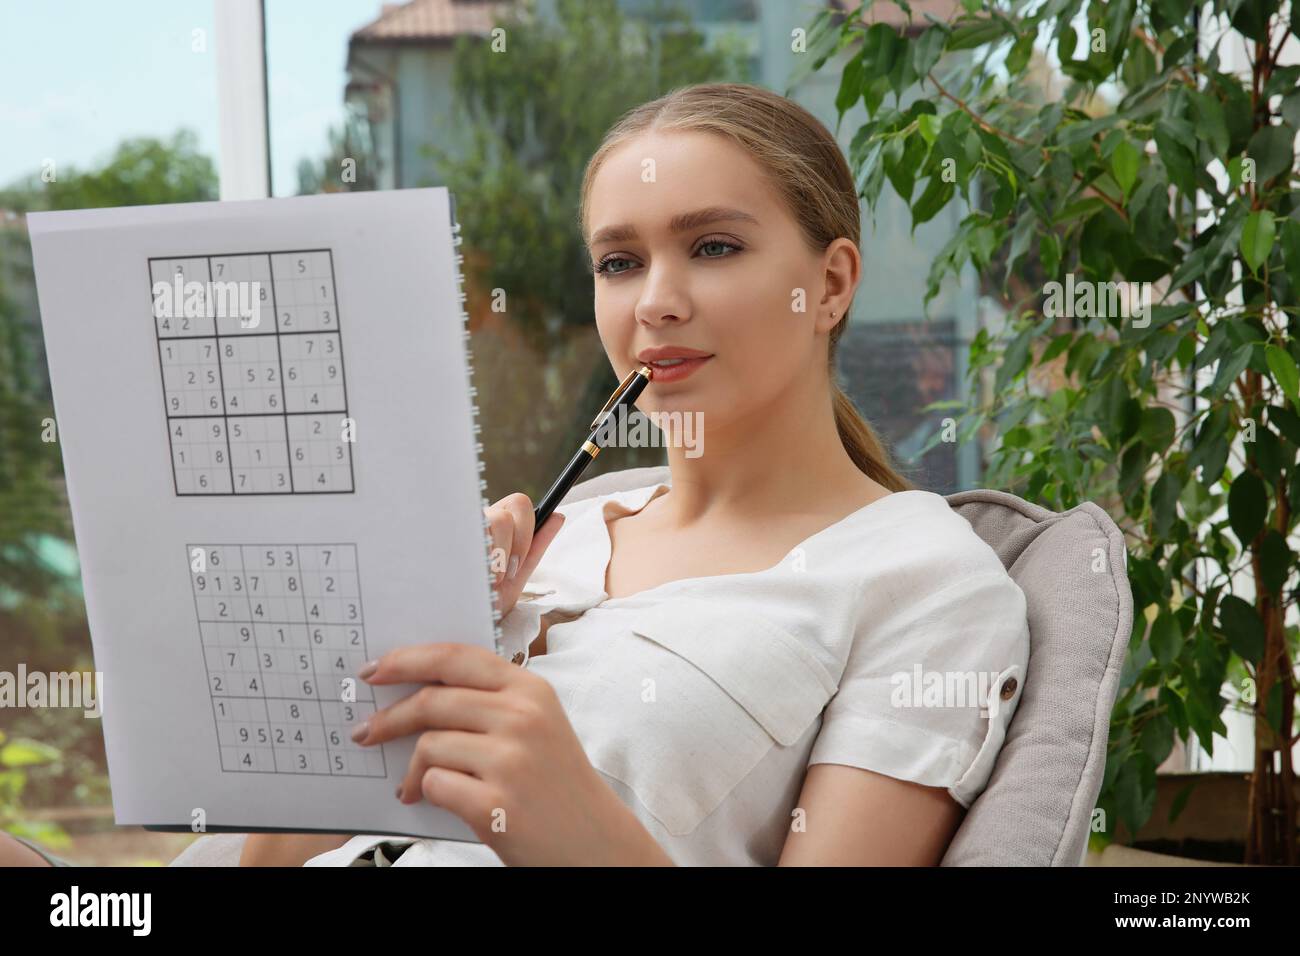 Schöne junge Frau löst Sudoku-Rätsel in der Nähe von Fenstern  Stockfotografie - Alamy